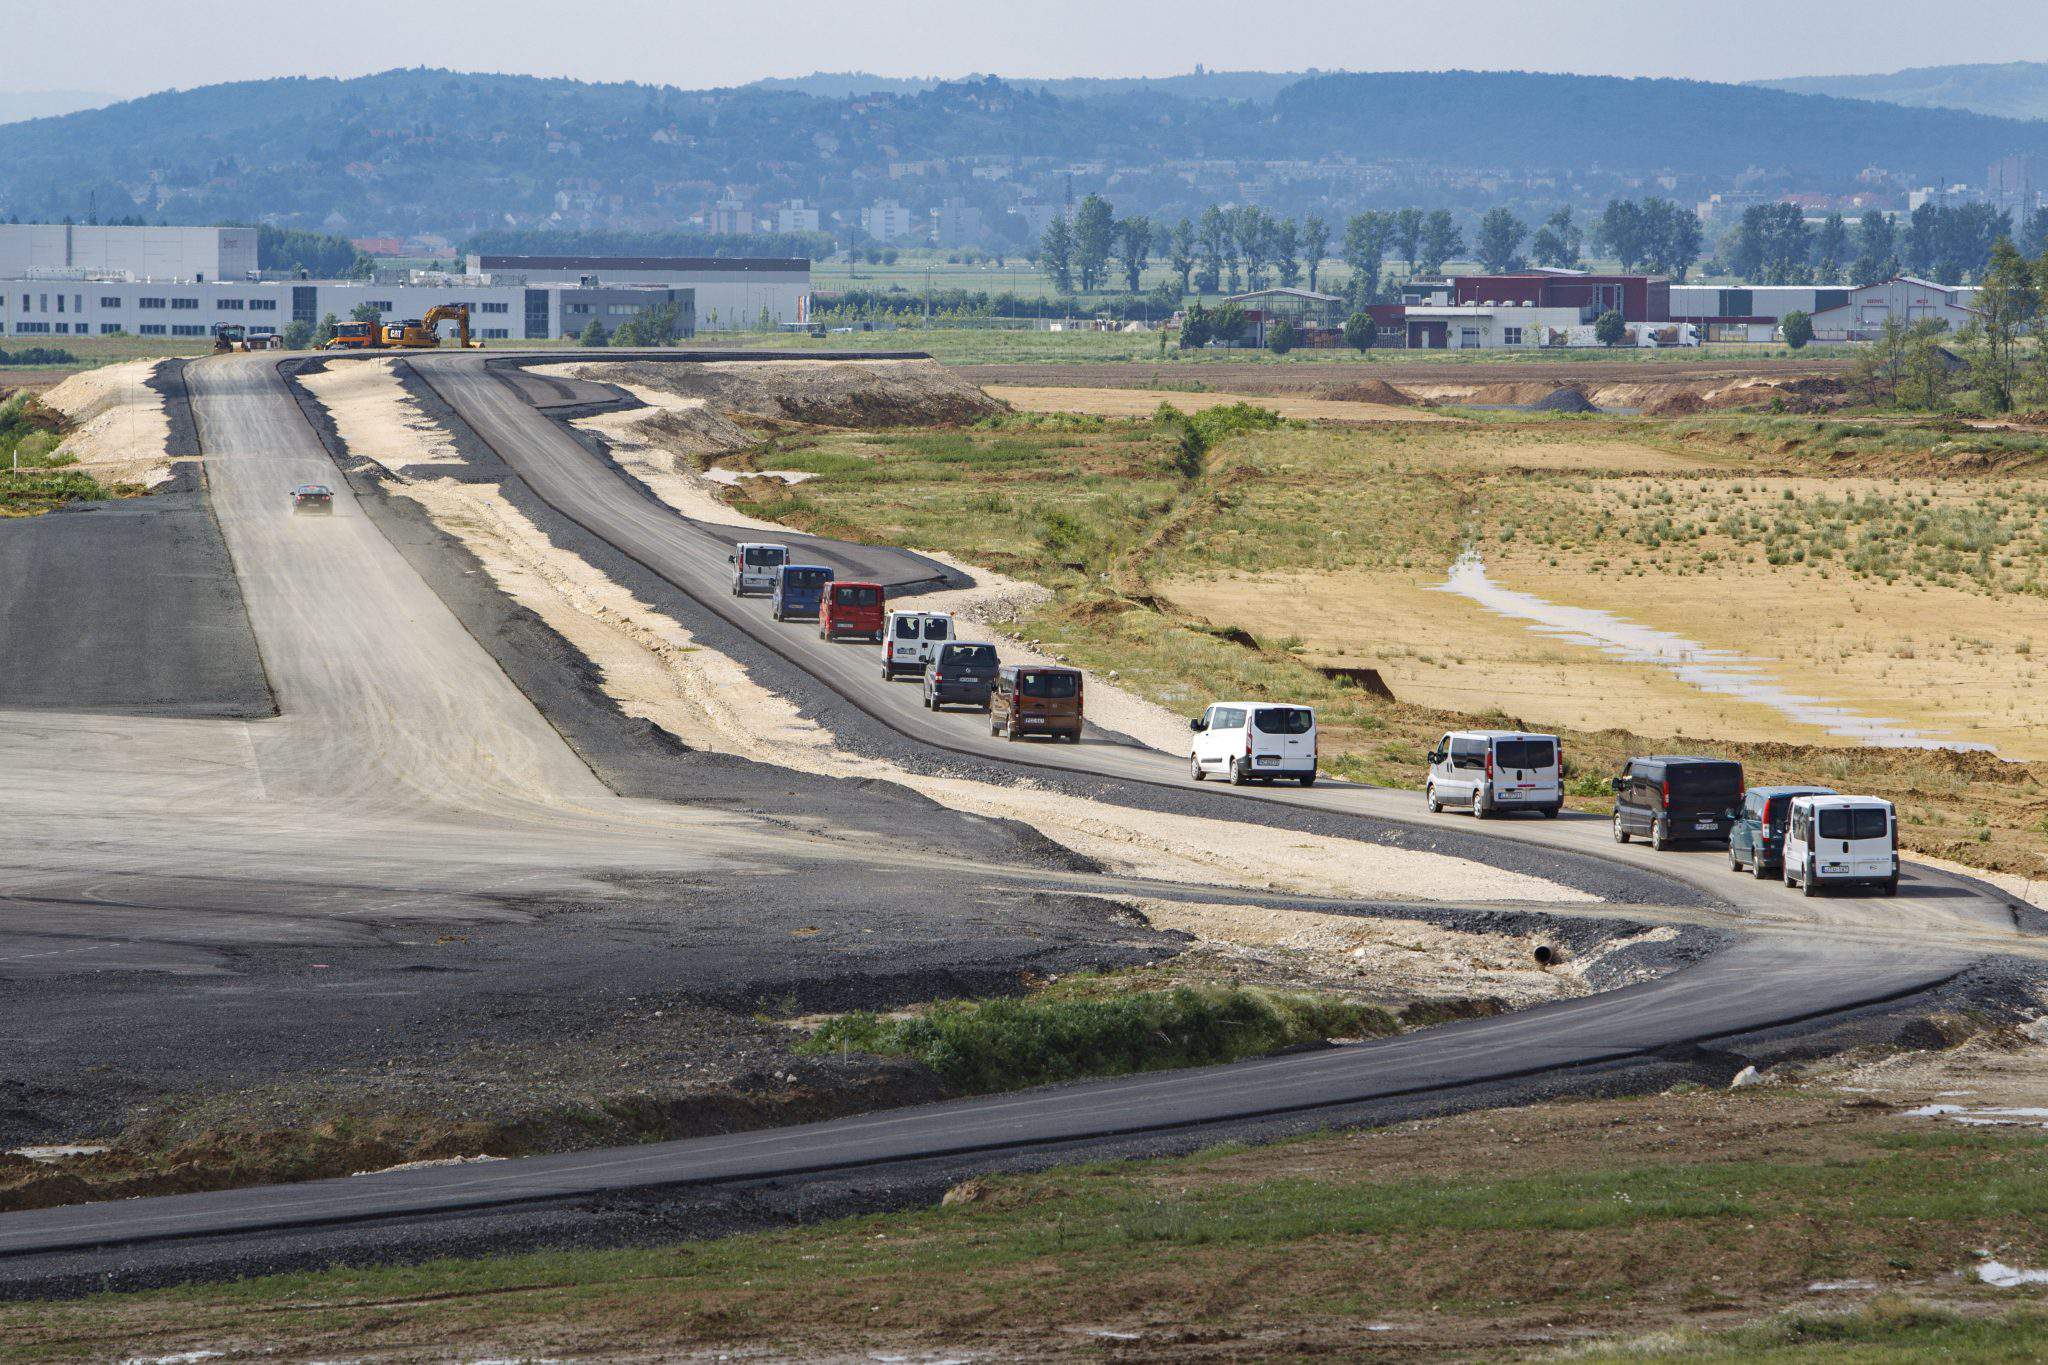 La pista de pruebas más grande de Hungría pronto estará terminada